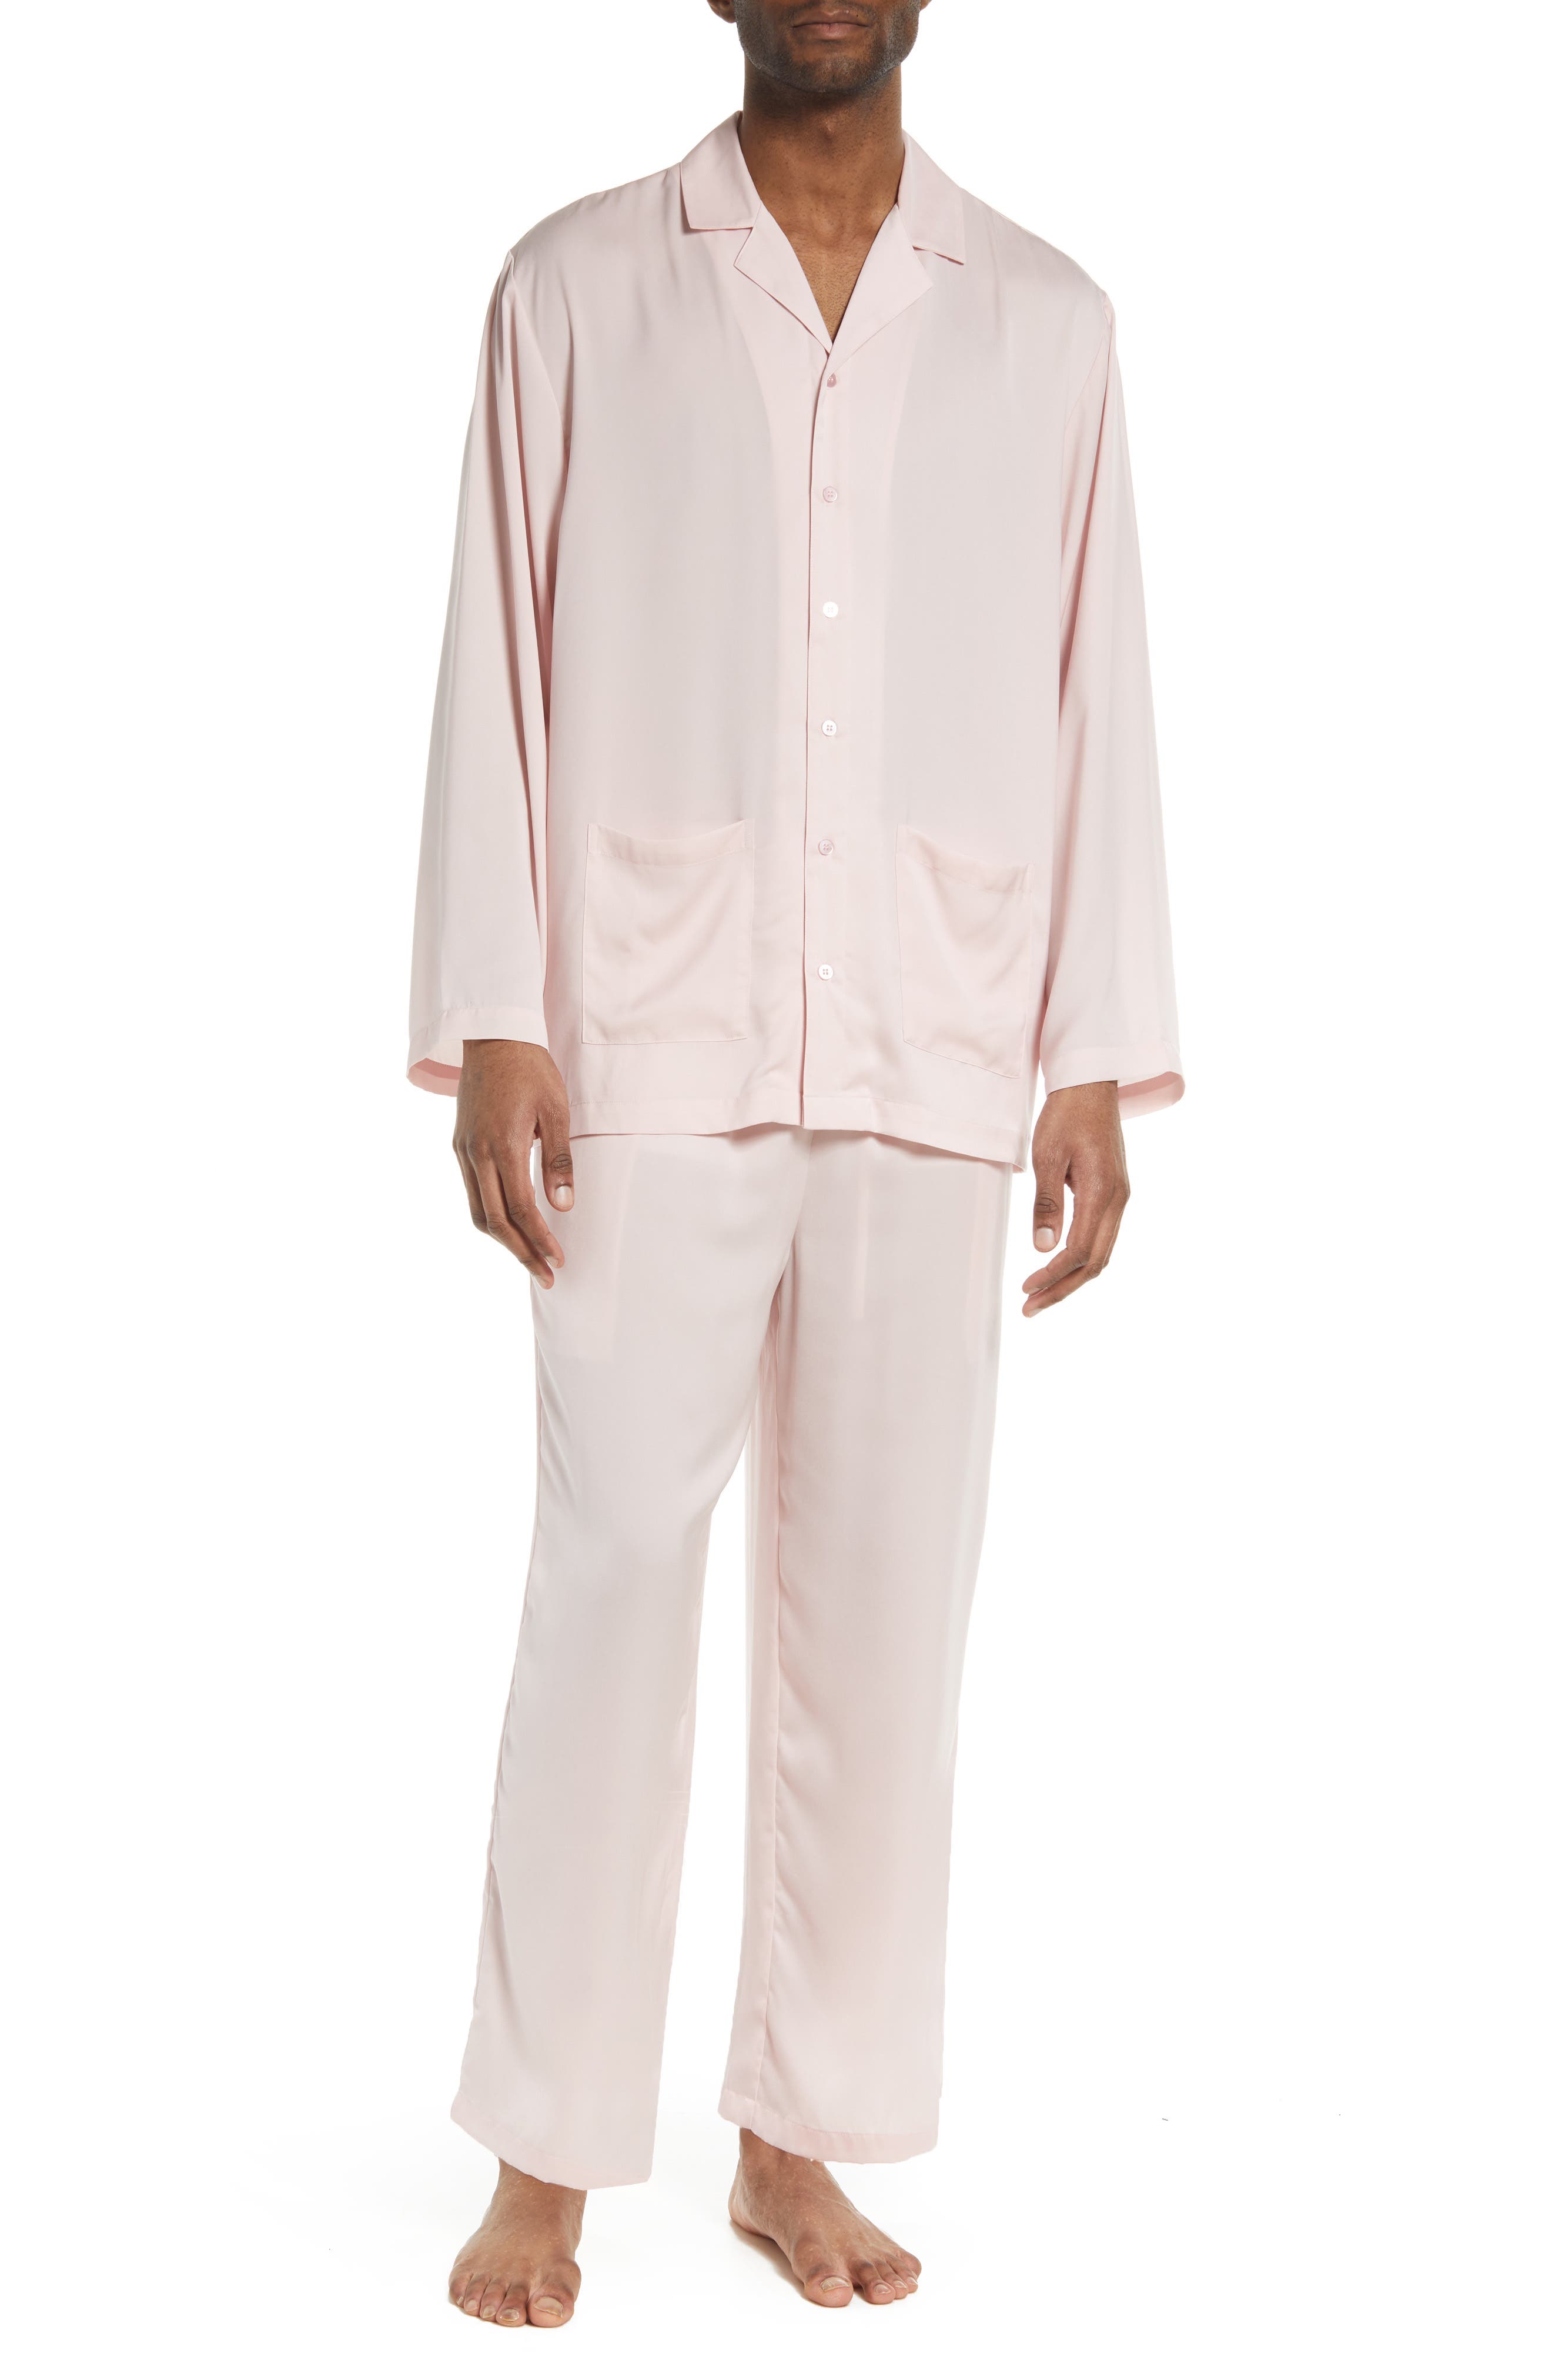 Mens Relaxed Satin Pajama Shorts in Pink Lotus at Nordstrom Nordstrom Men Clothing Loungewear Pajamas 